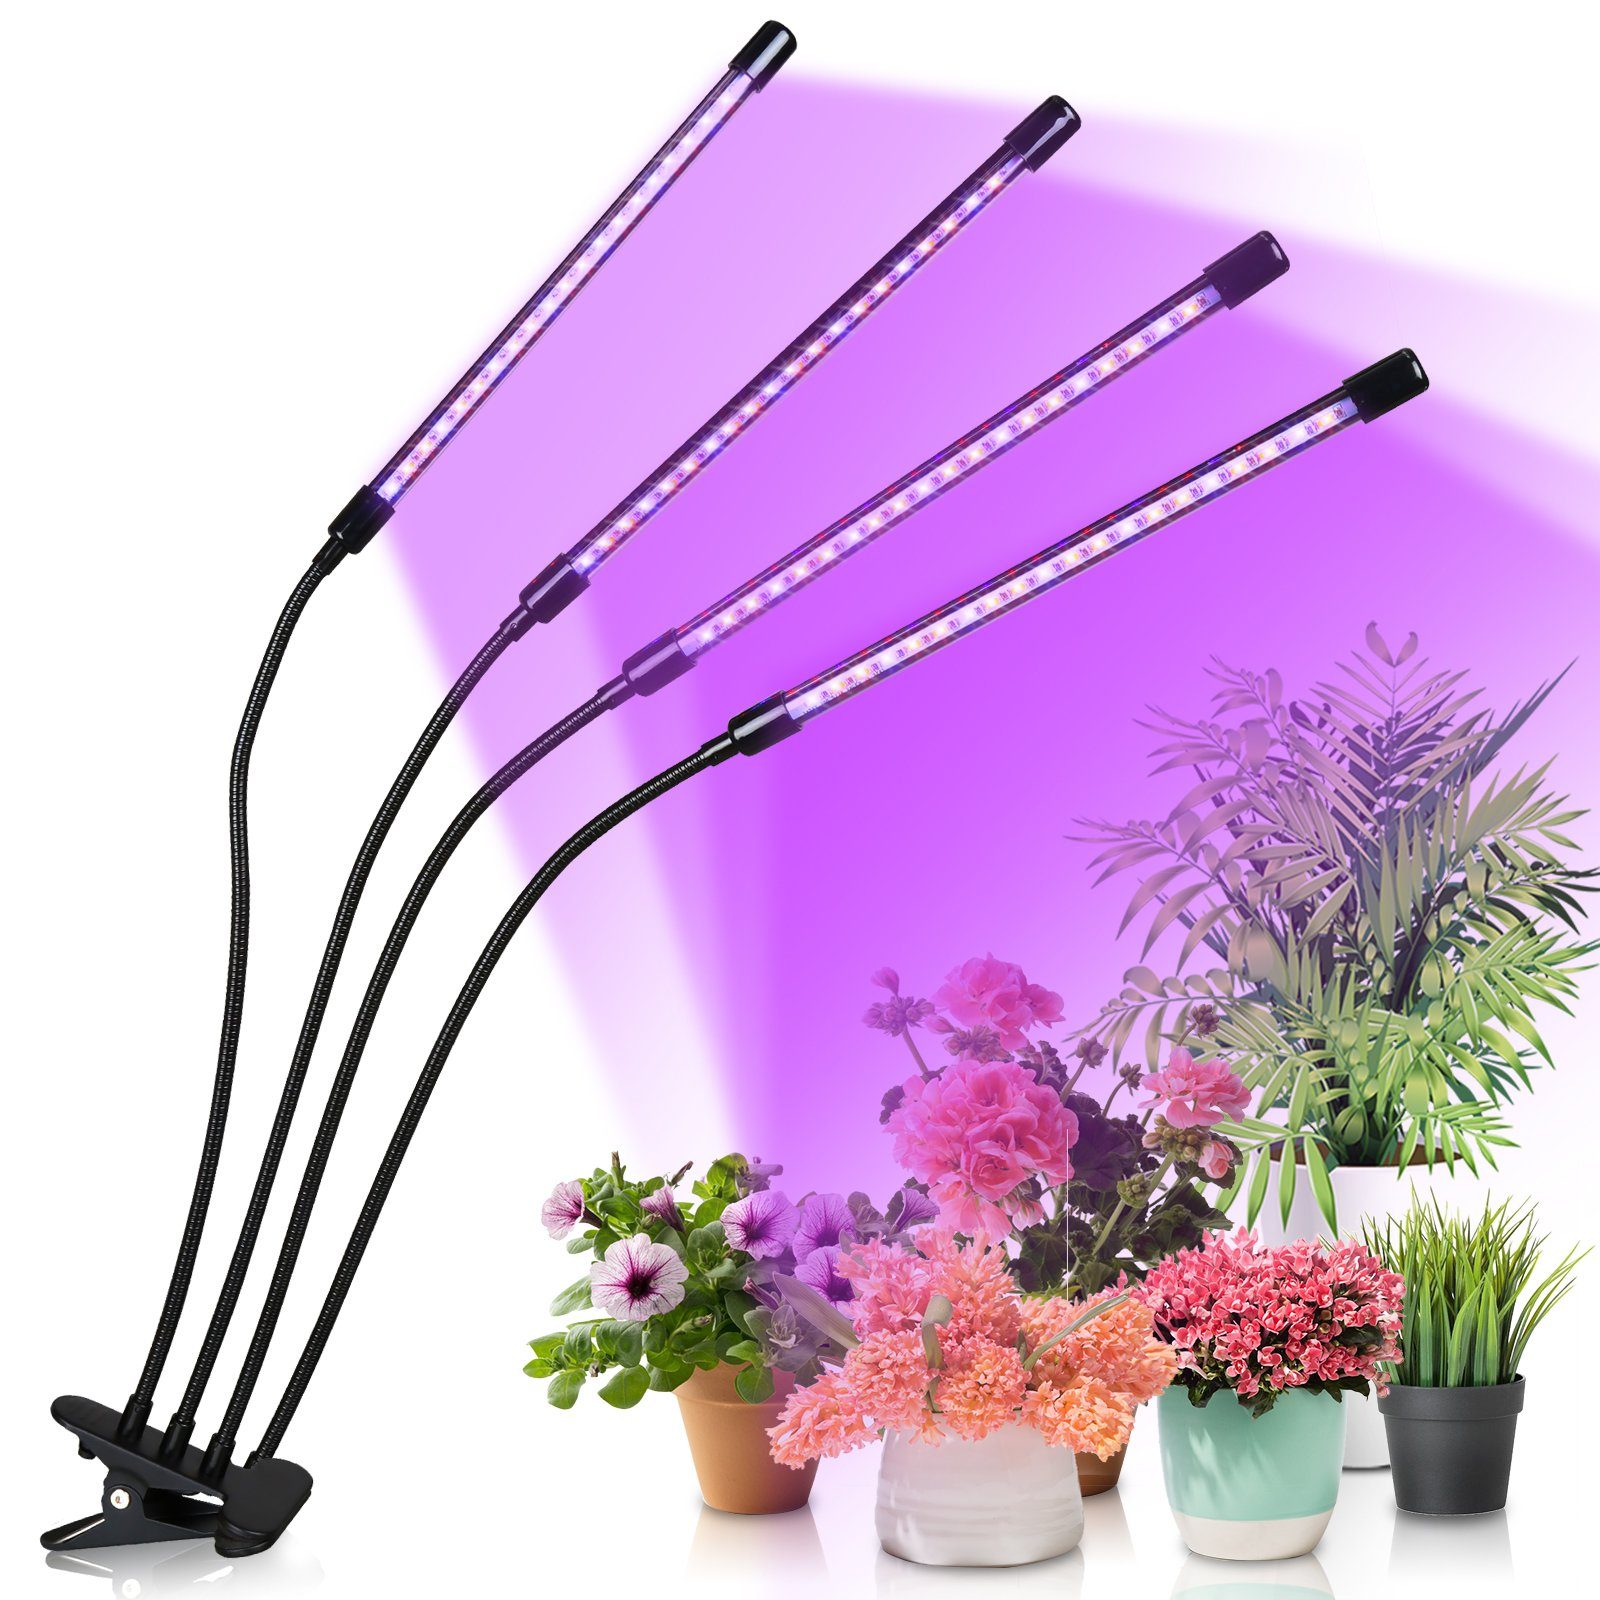 Lospitch Pflanzenlampe LED Pflanzenlicht 80 LEDs 4 Köpfe Grow Lampe Pflanzenleuchte, Wachstumslampe Pflanzen 10 Dimmstufen LED Zimmerpflanzen Vollspektrum | Pflanzenlampen